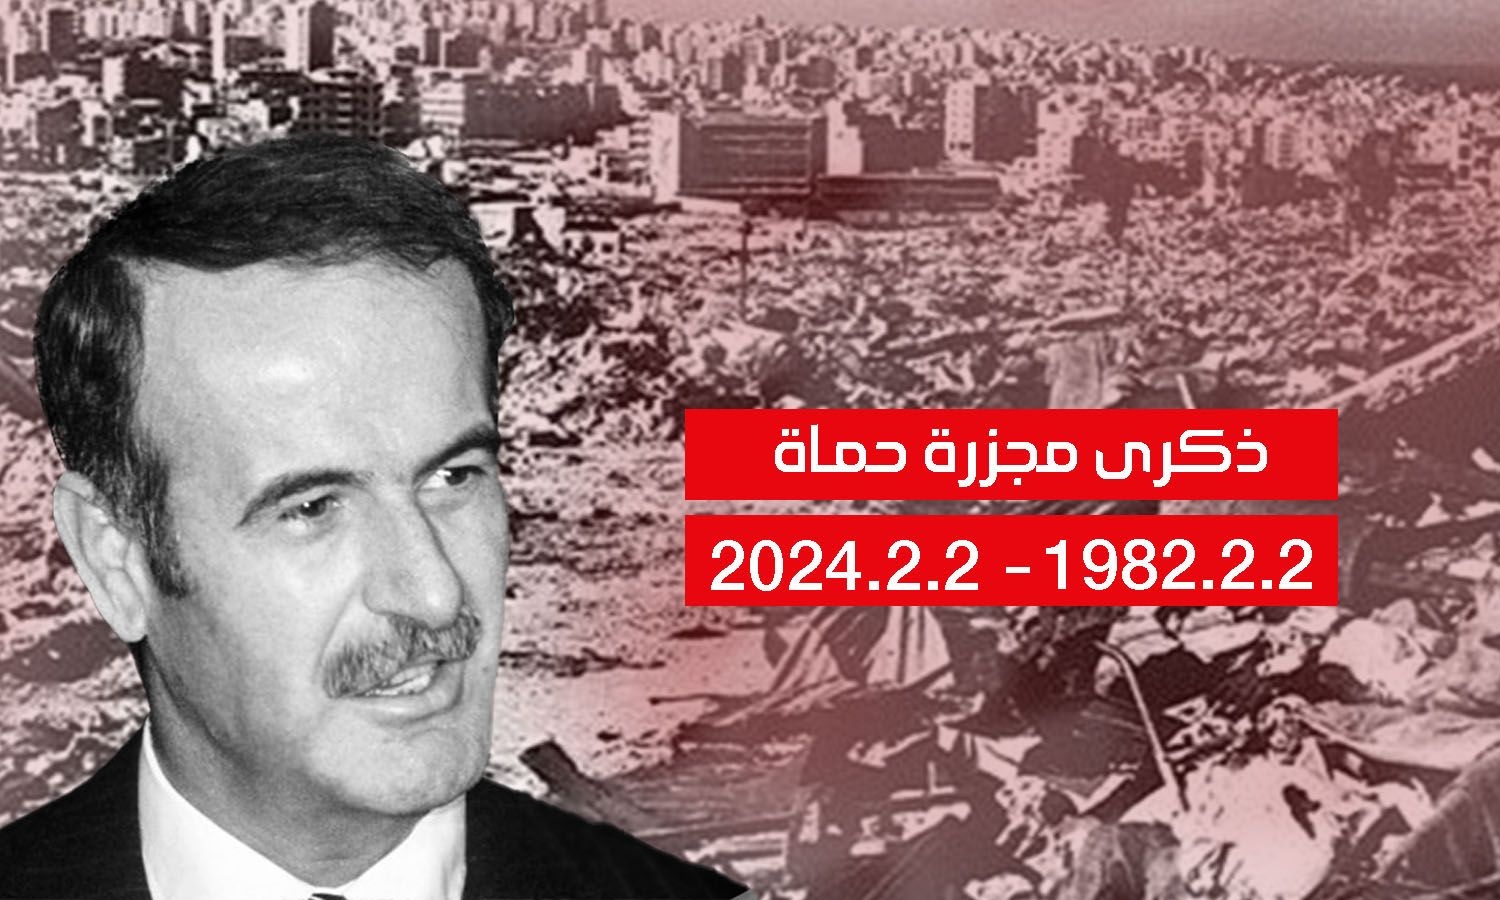 The Hama massacre of 1982 (Edited by Enab Baladi)